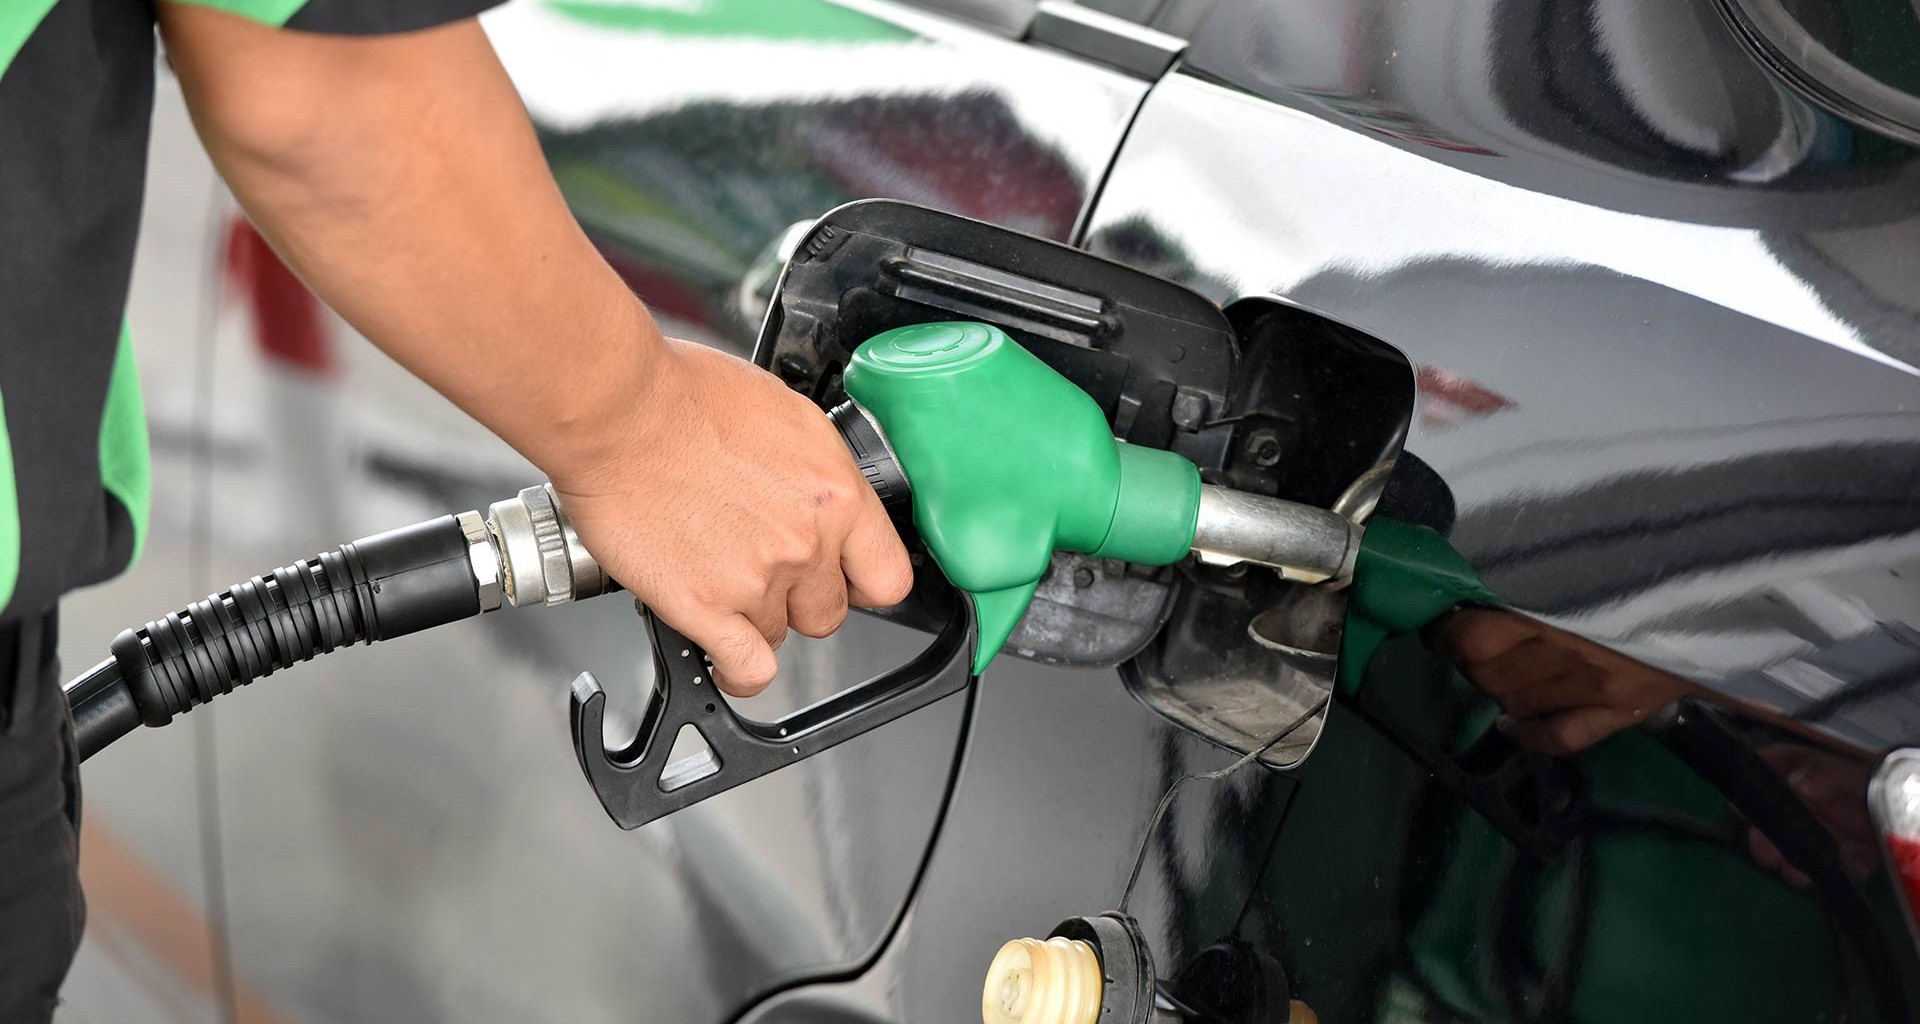  Descarta COPARMEX aumento de precios debido al incremento en la gasolina